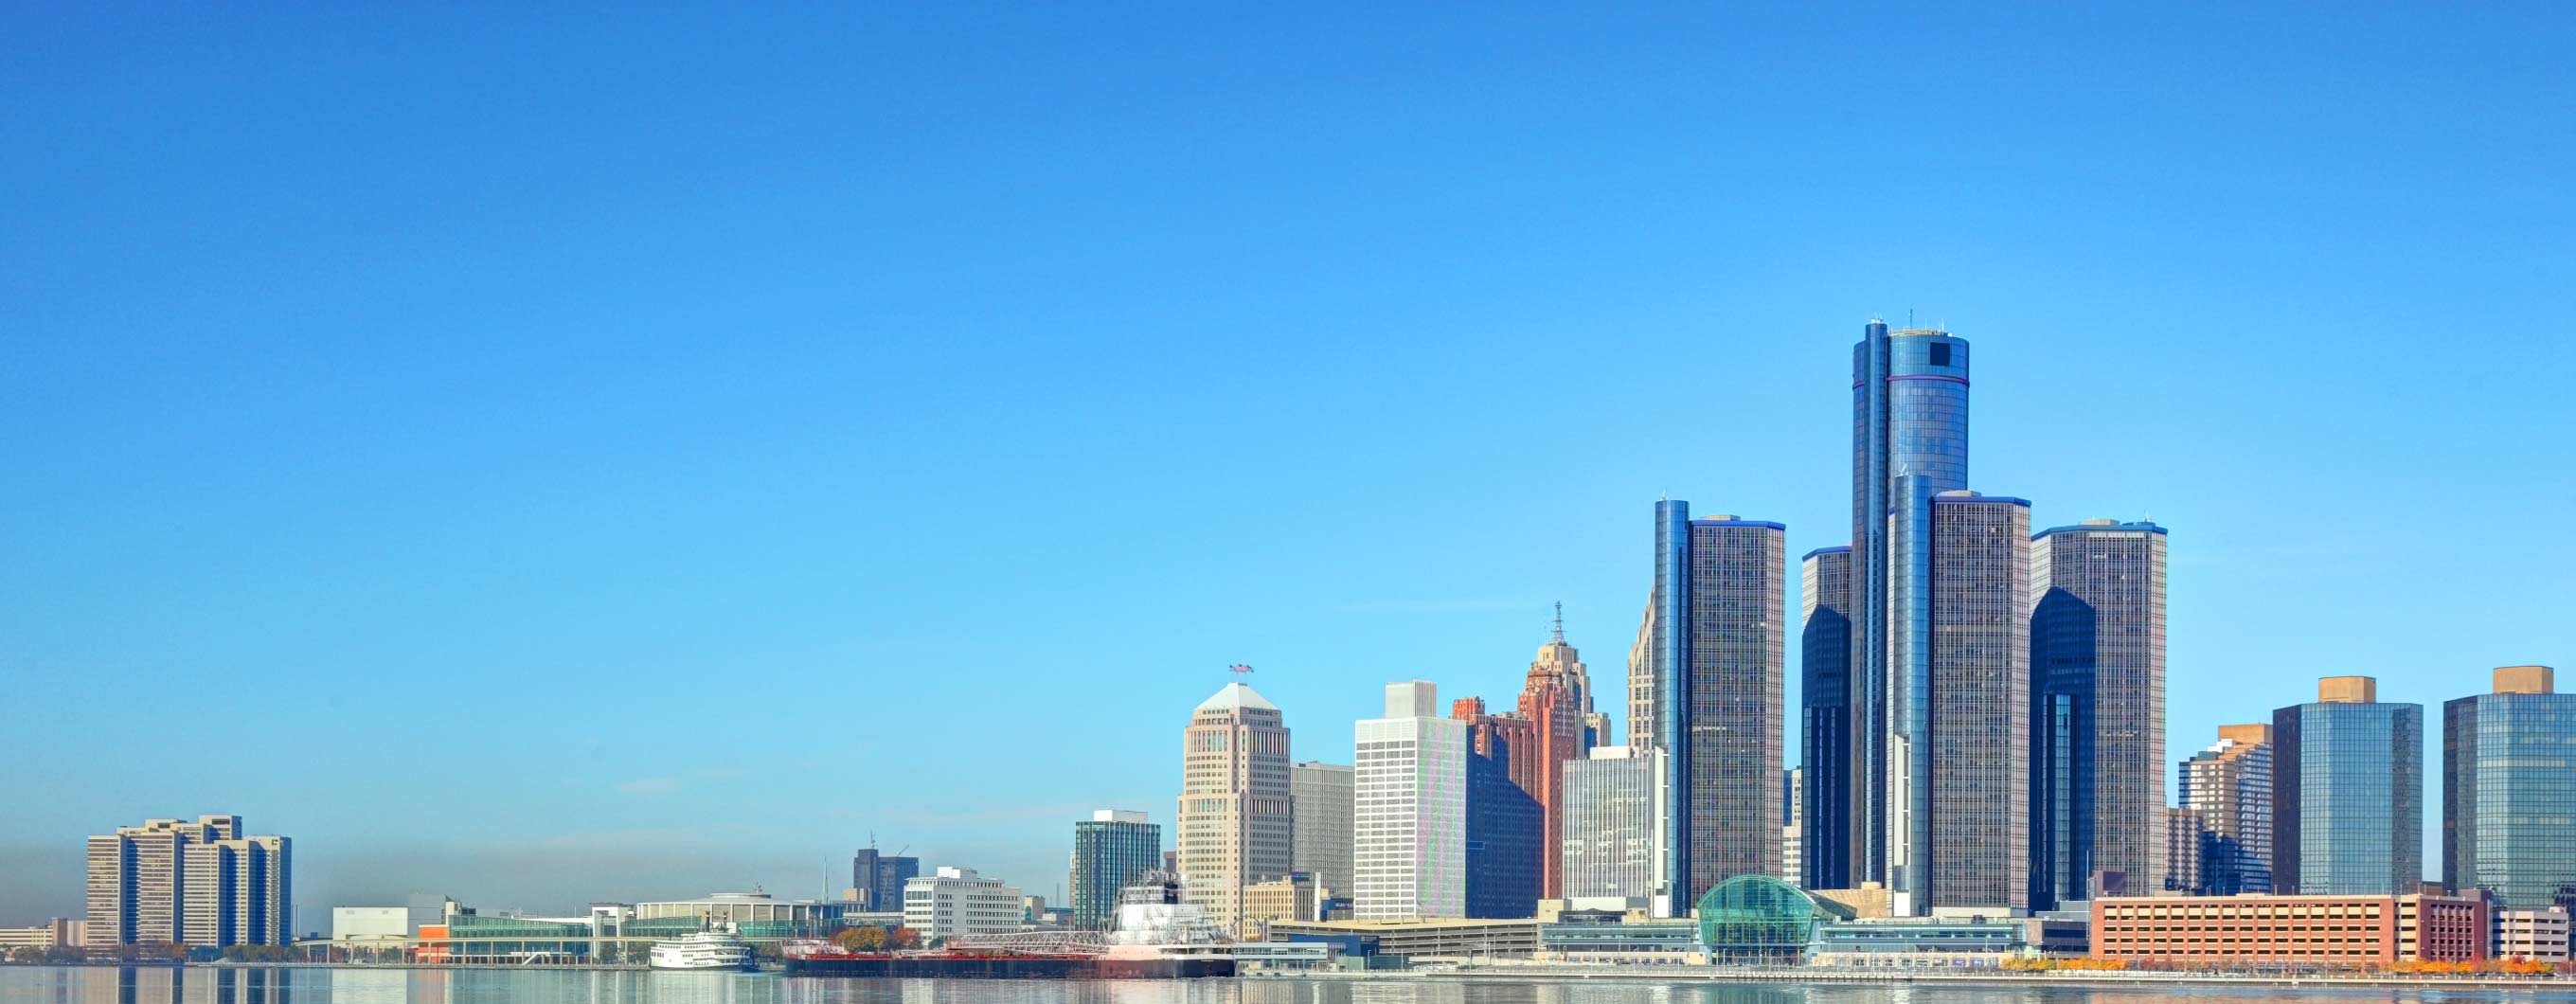 The Detroit skyline on a sunny, clear day.